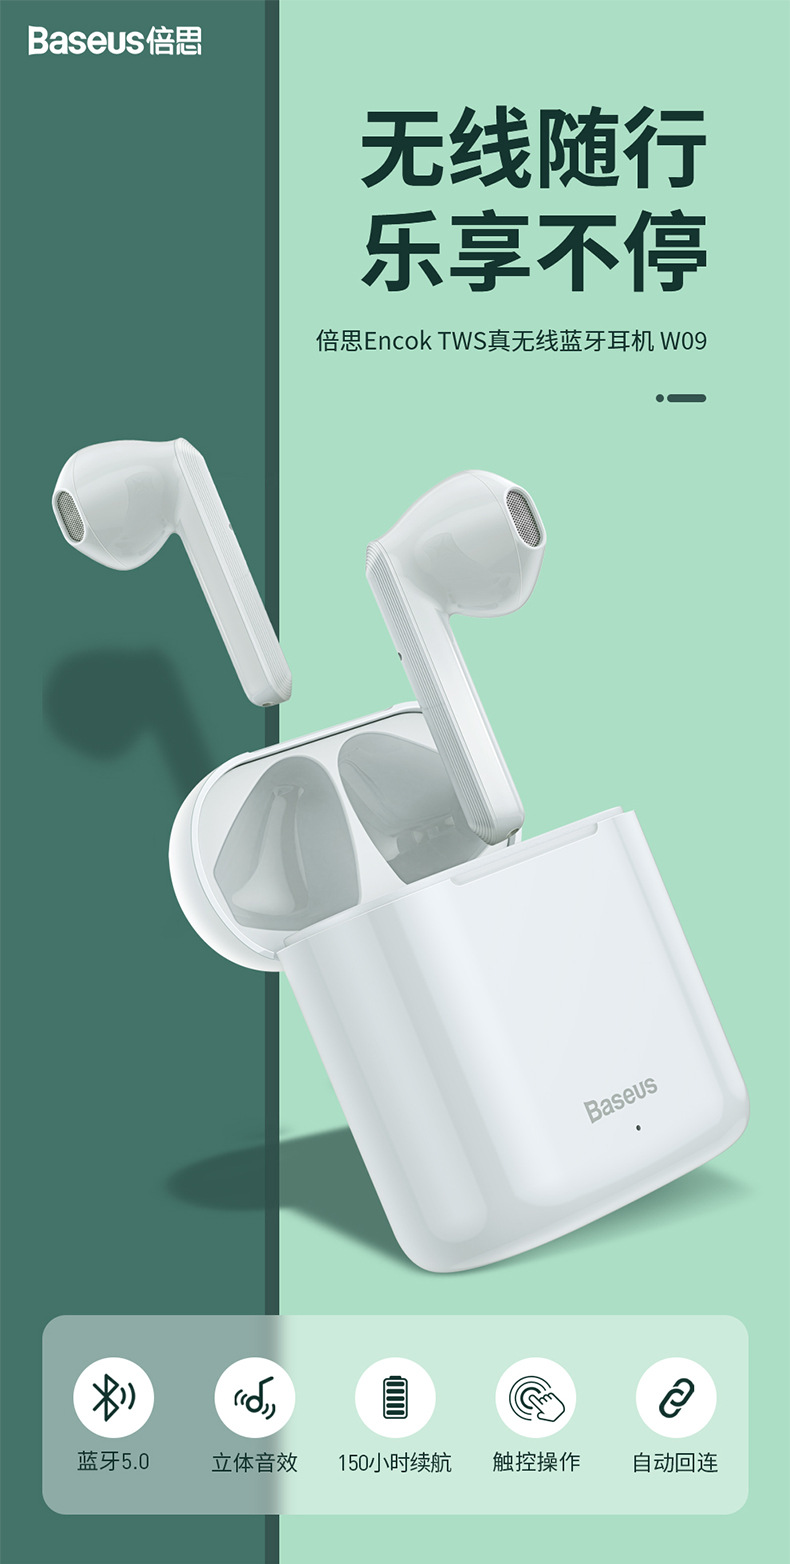 W09无线蓝牙耳机5.0 TWS耳机触控通话耳机户外运动音乐耳机